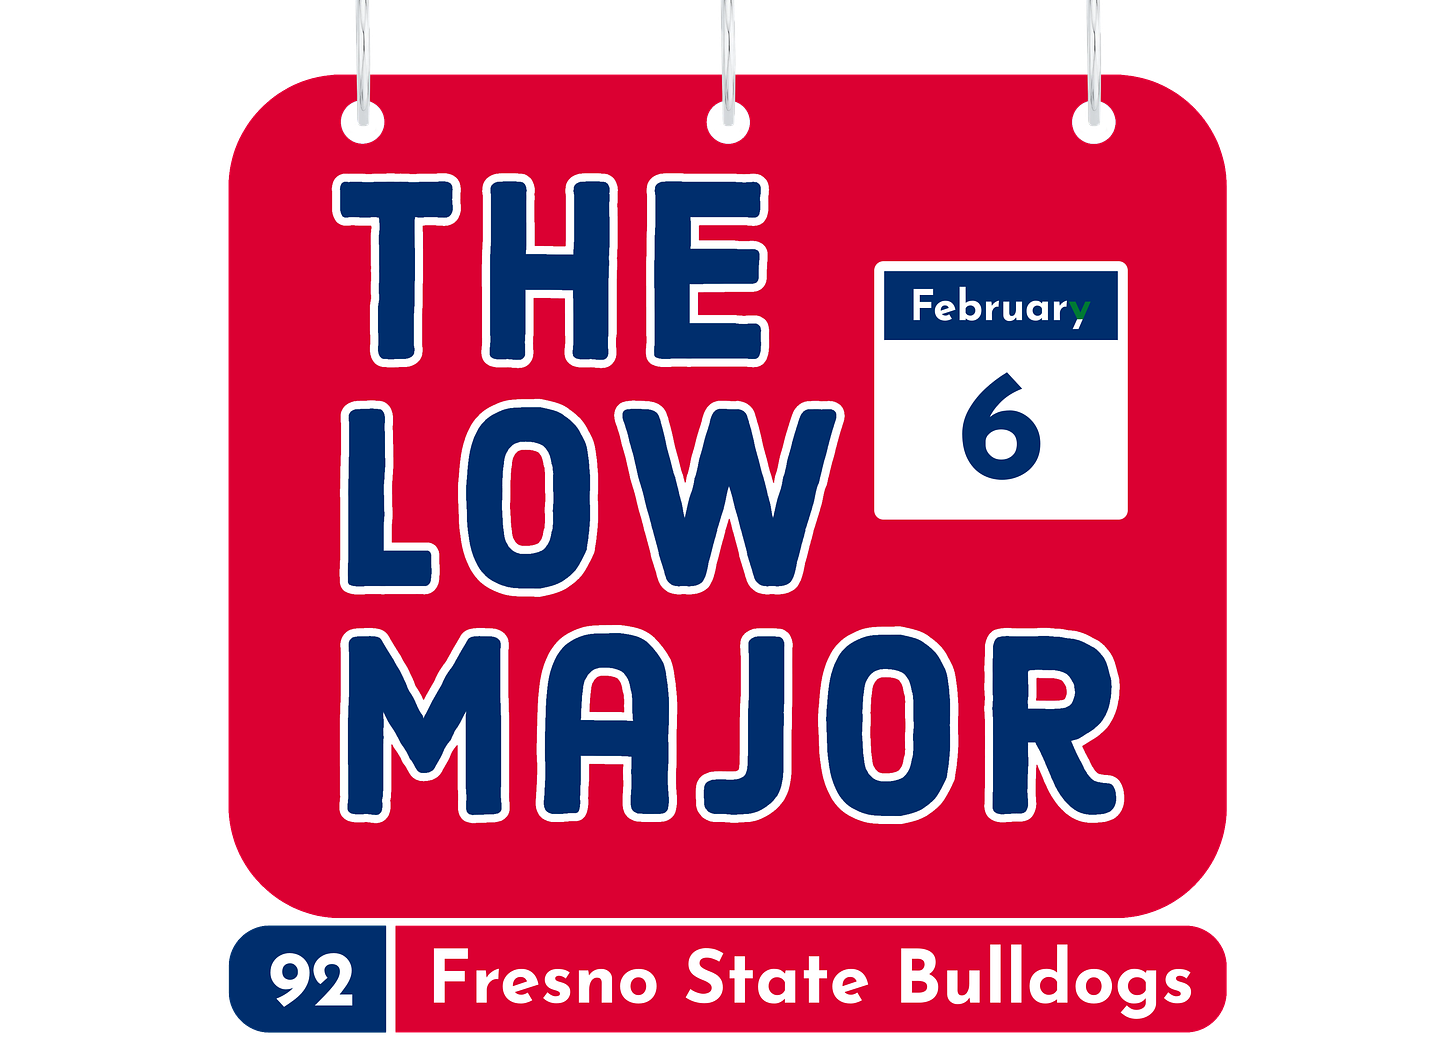 Name-a-Day Fresno State logo